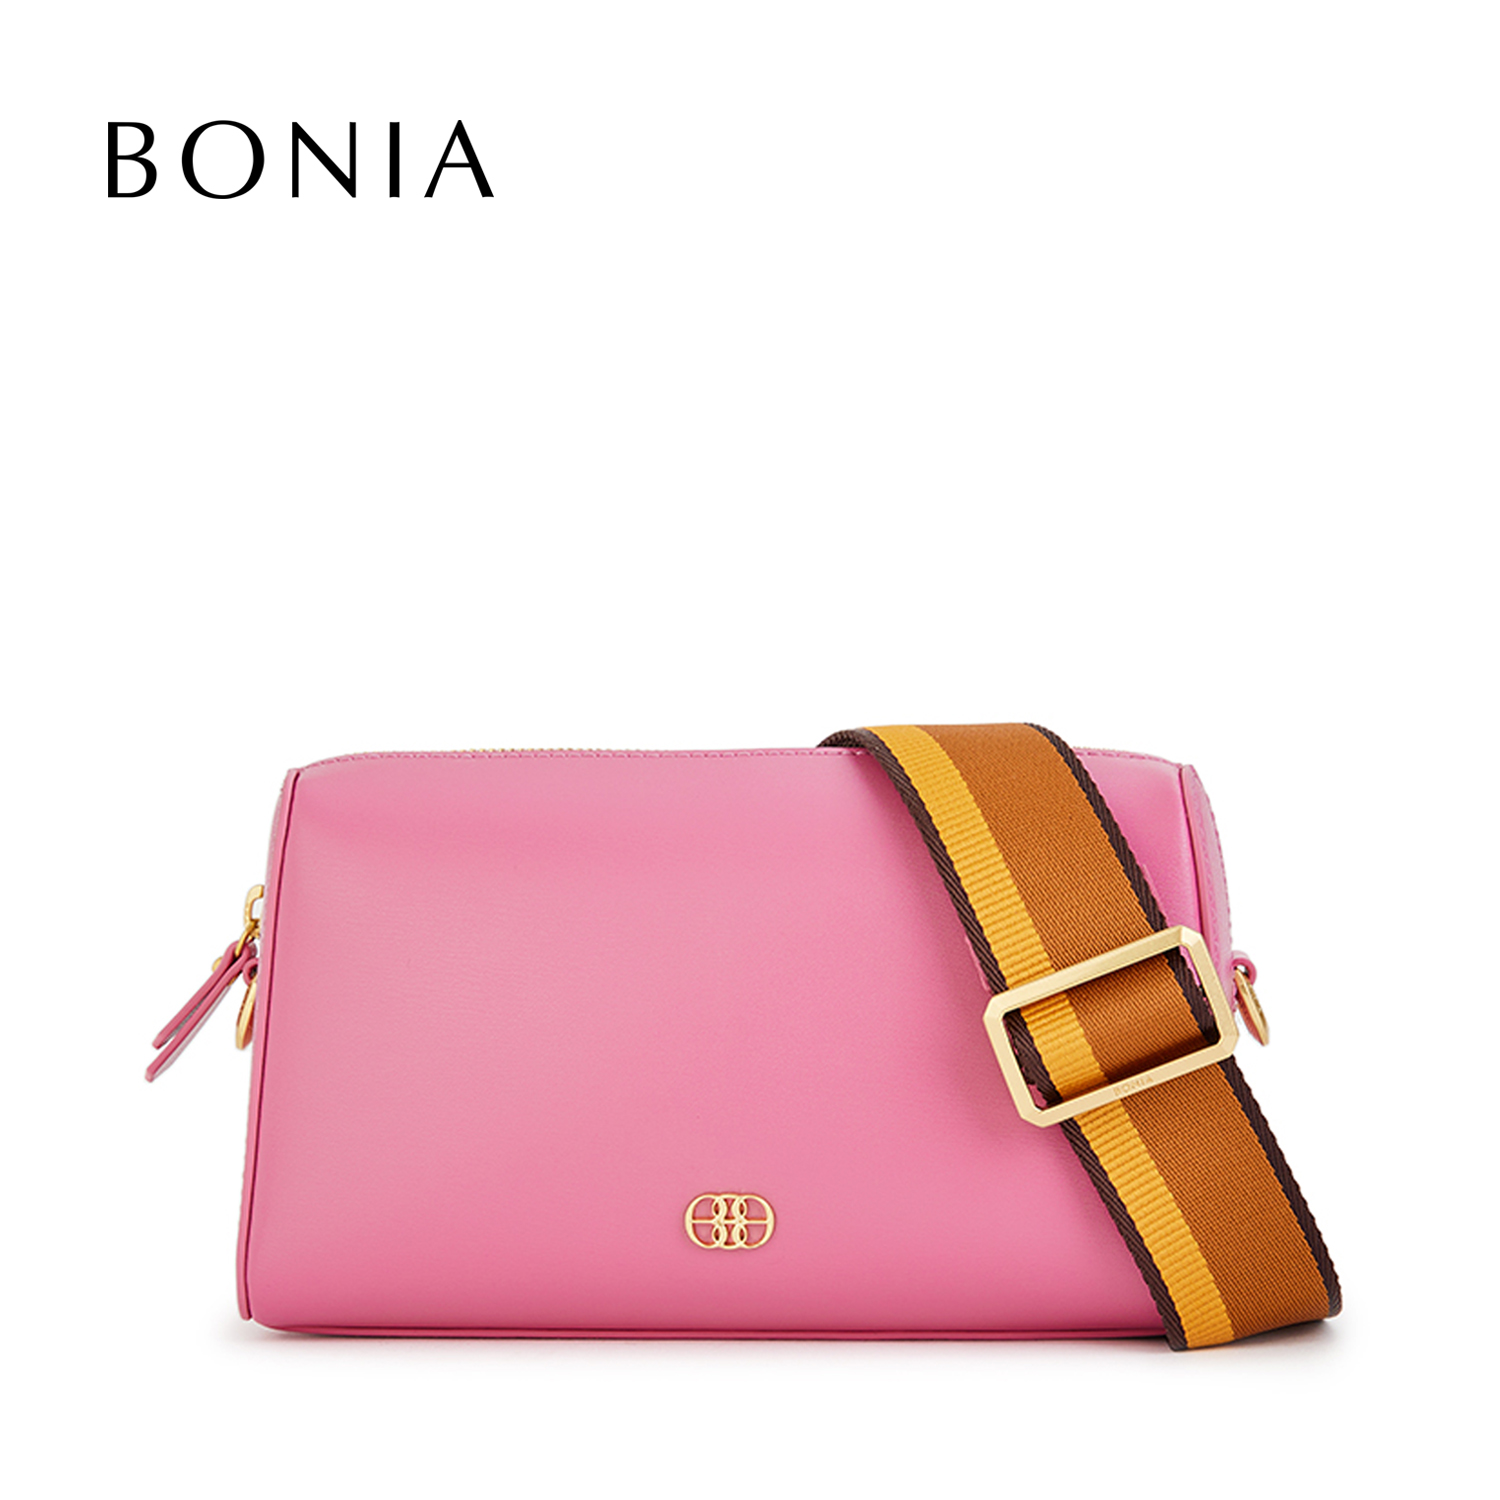 Bonia Monogram Tote Bag 8522 274 15 Prices and Specs in Singapore